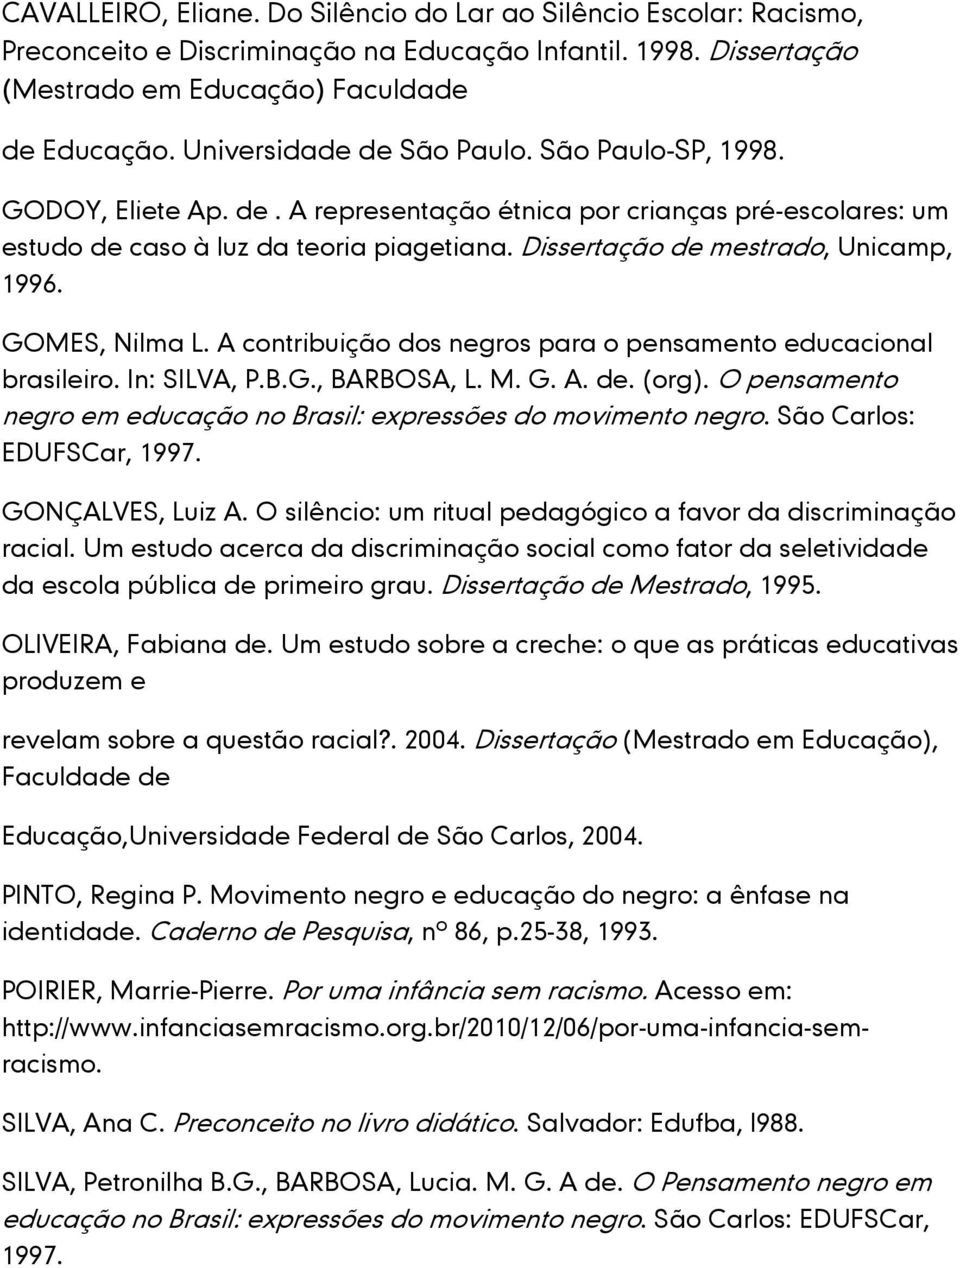 Dissertação de mestrado, Unicamp, 1996. GOMES, Nilma L. A contribuição dos negros para o pensamento educacional brasileiro. In: SILVA, P.B.G., BARBOSA, L. M. G. A. de. (org).